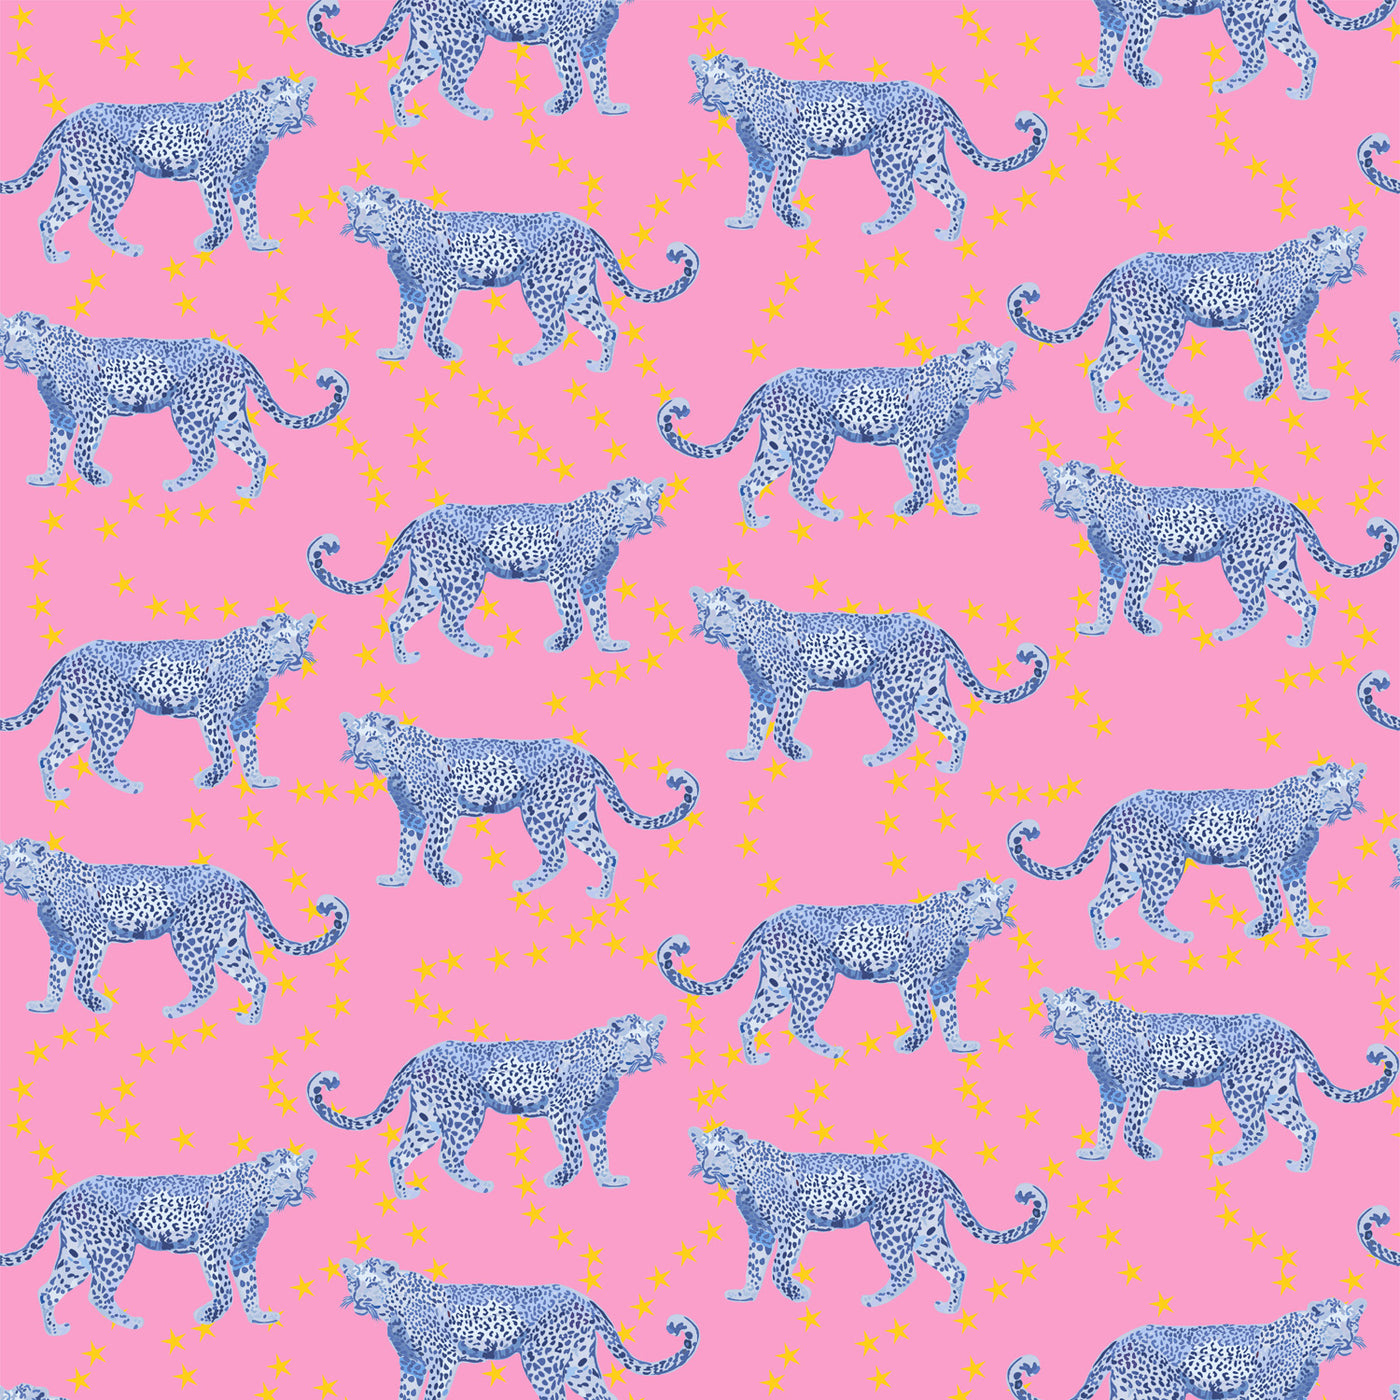 Cosmic Cheetah Wallpaper Katie Kime Design